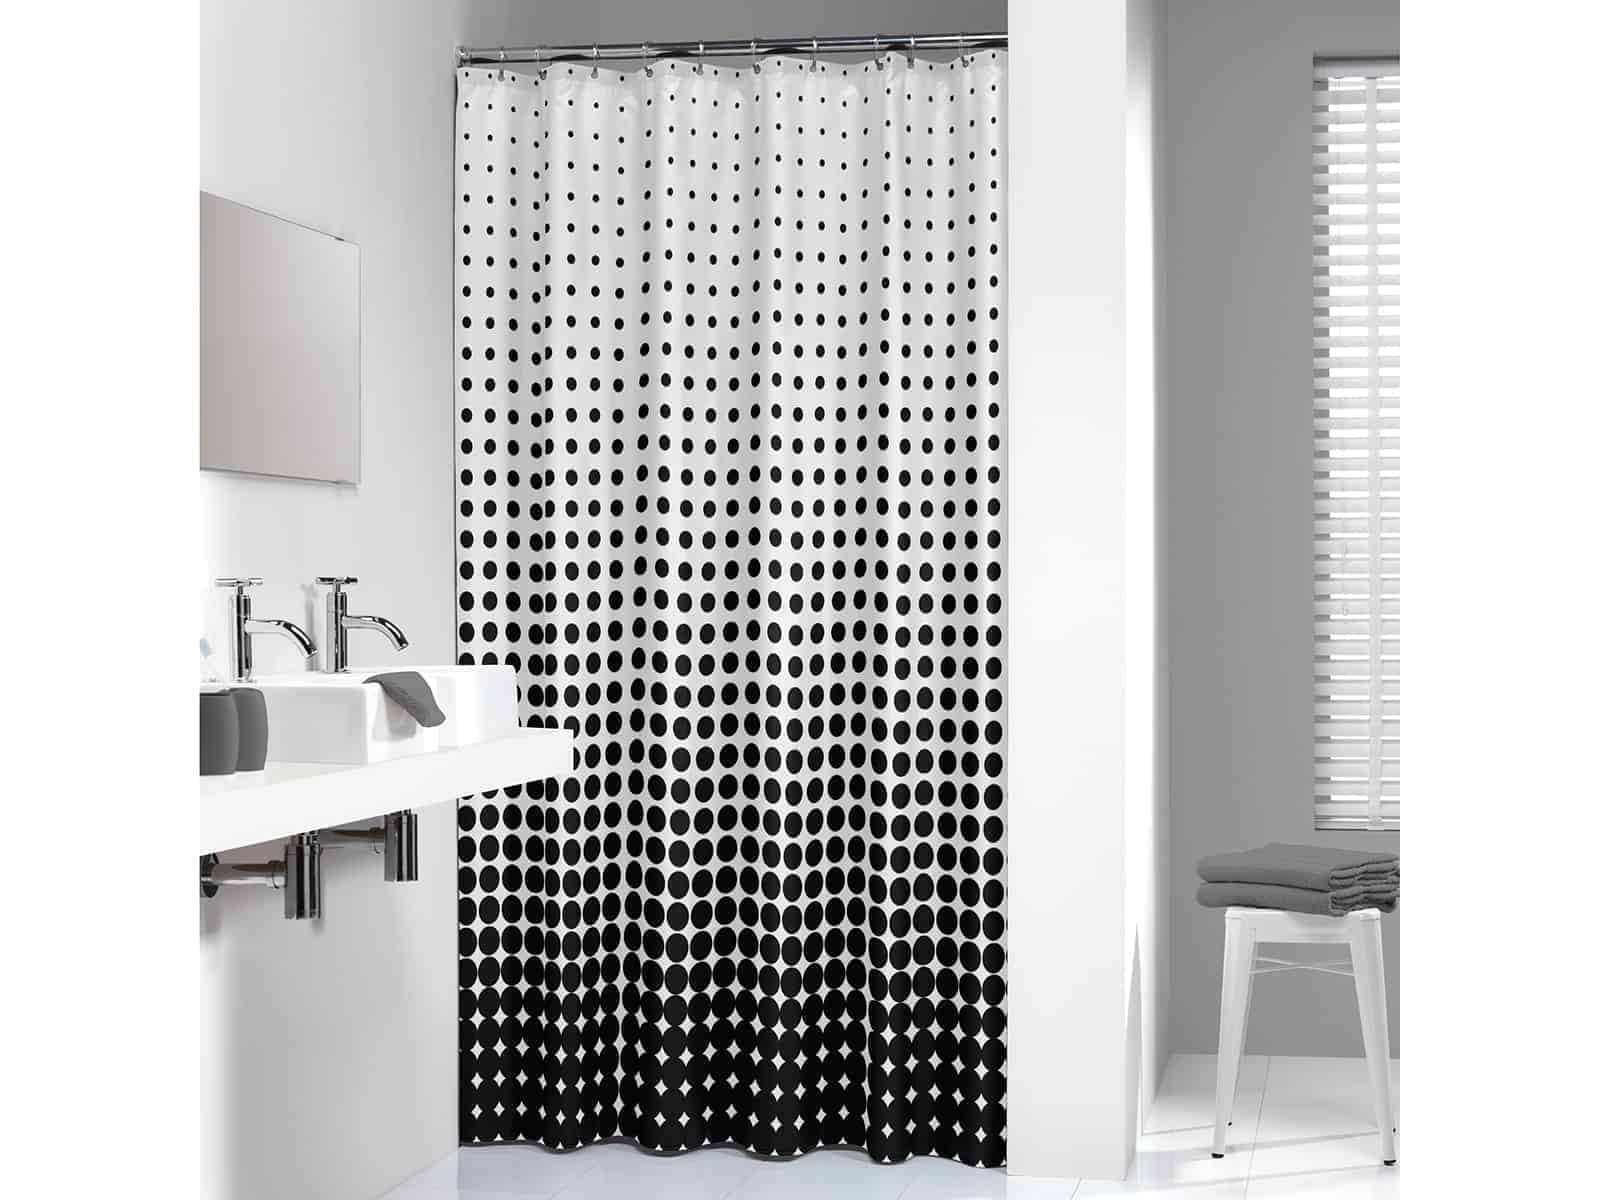 Лучшие шторки для ванны. Sealskin для ванной. Hb74061 штора для ванной комнаты 180cm*180cm. Стильная шторка для ванной. Стильная занавеска в ванную.